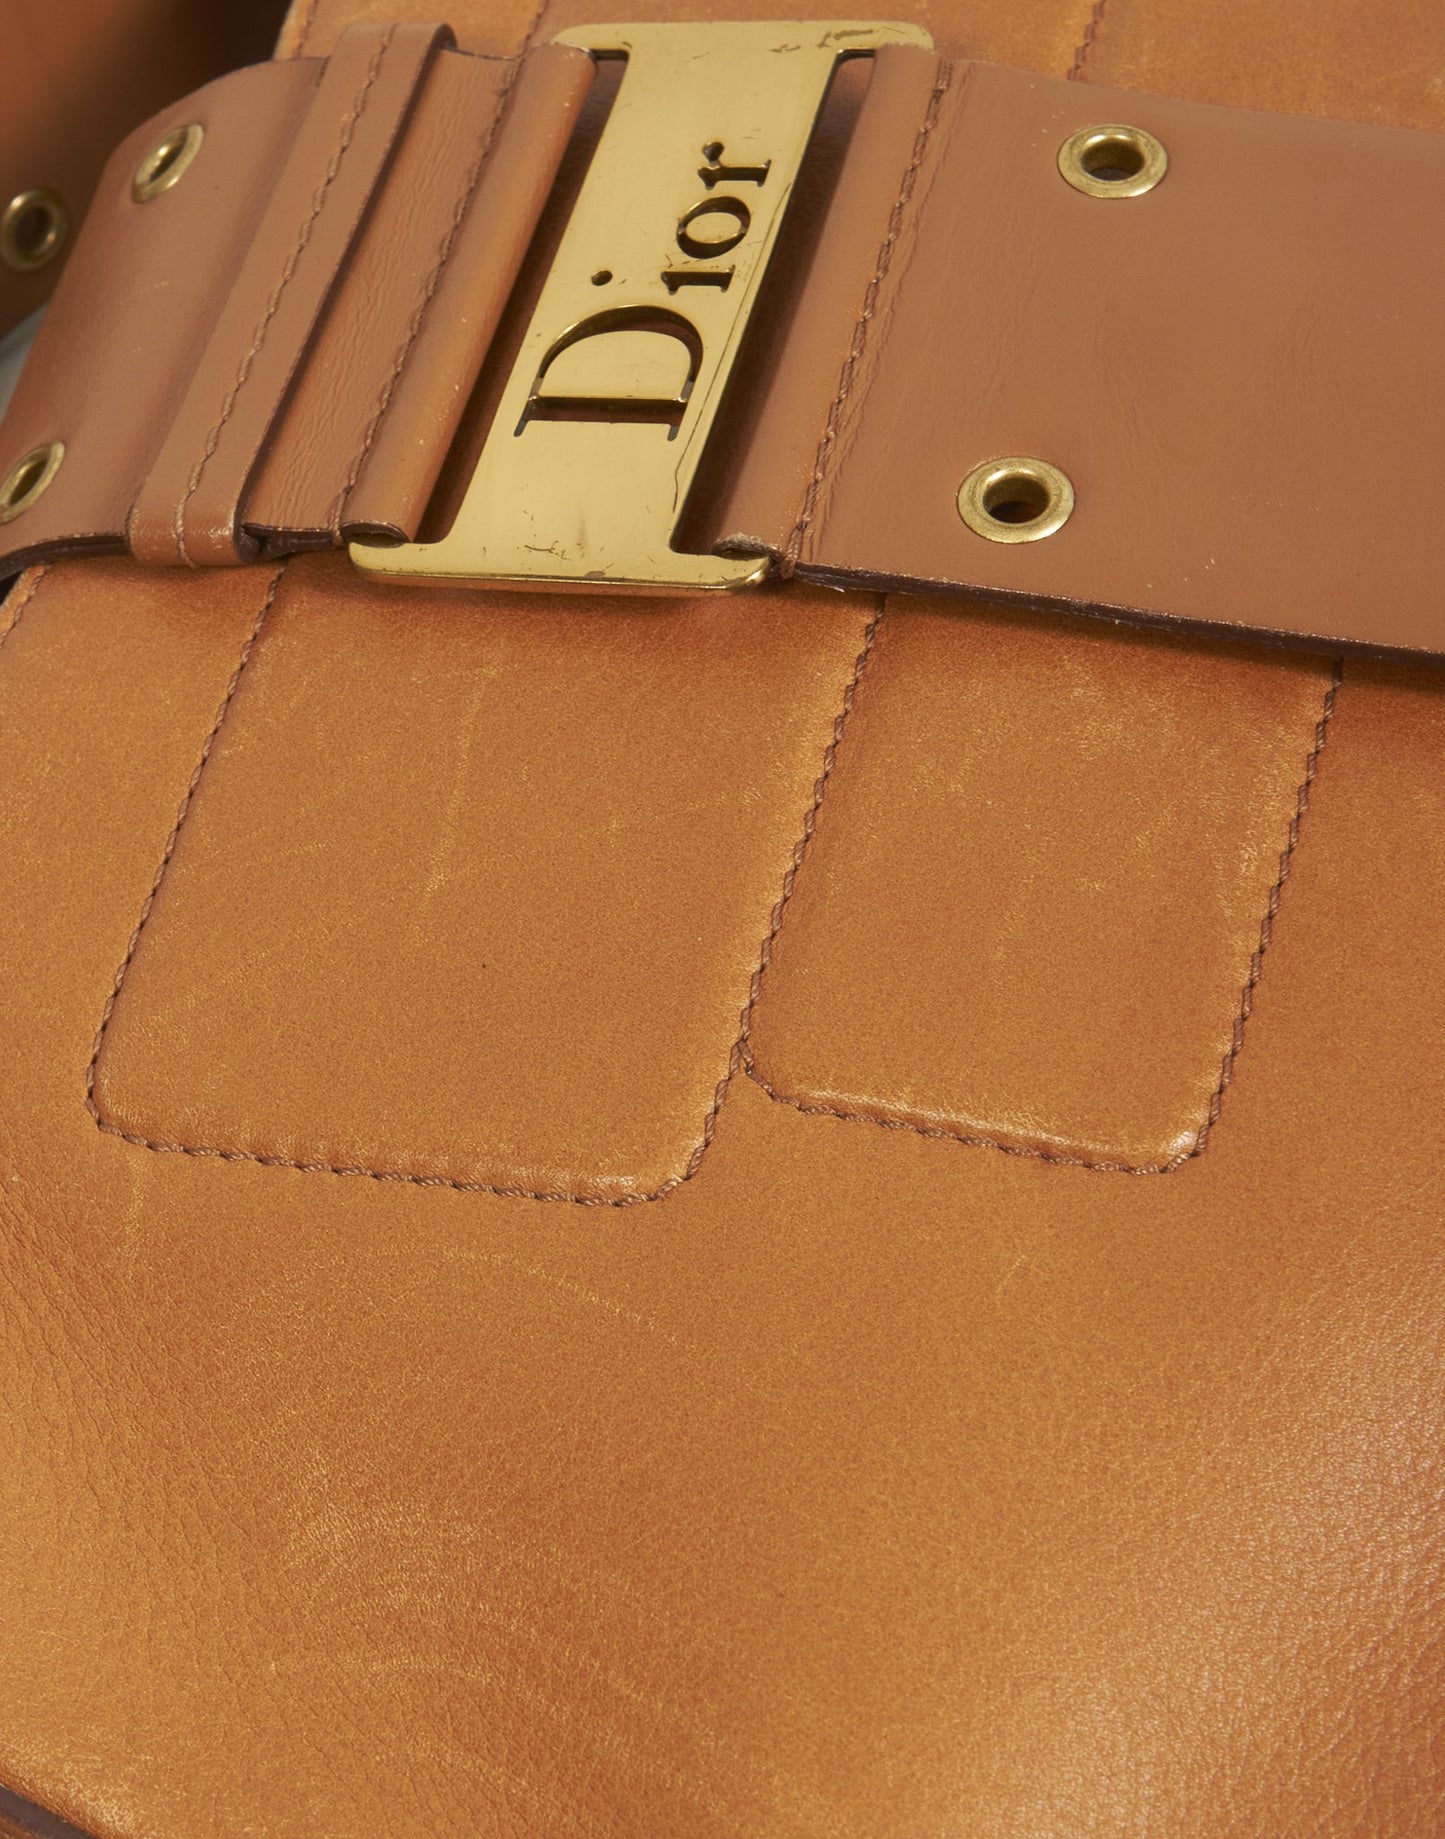 Grand sac à bandoulière Hobo en cuir marron clair Dior Street Chic